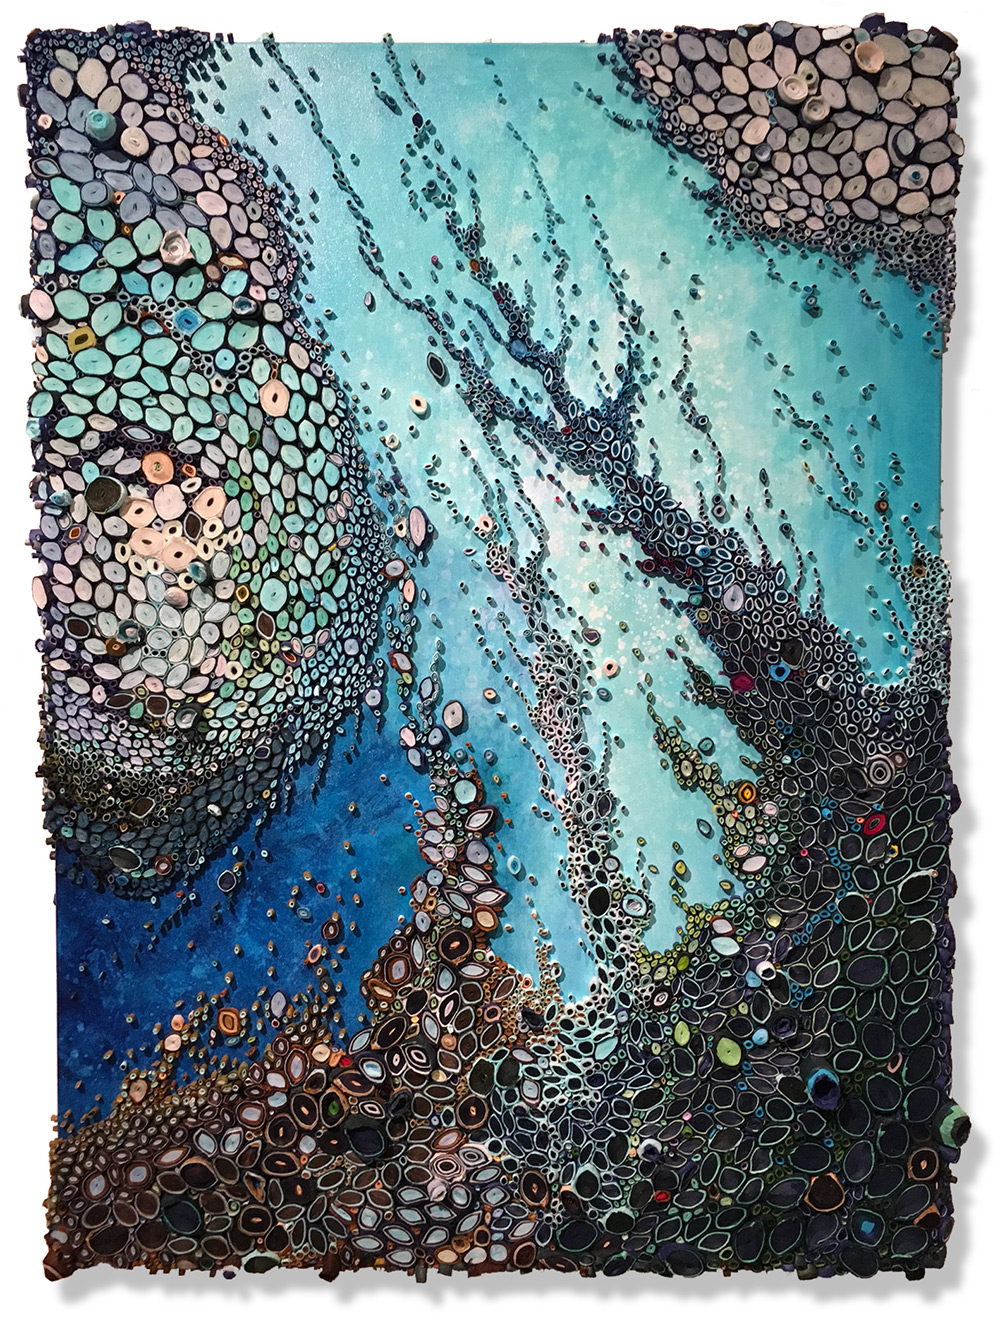 Океанские пейзажи от Эми Дженсер: рулончики из тутовой бумаги вместо красок